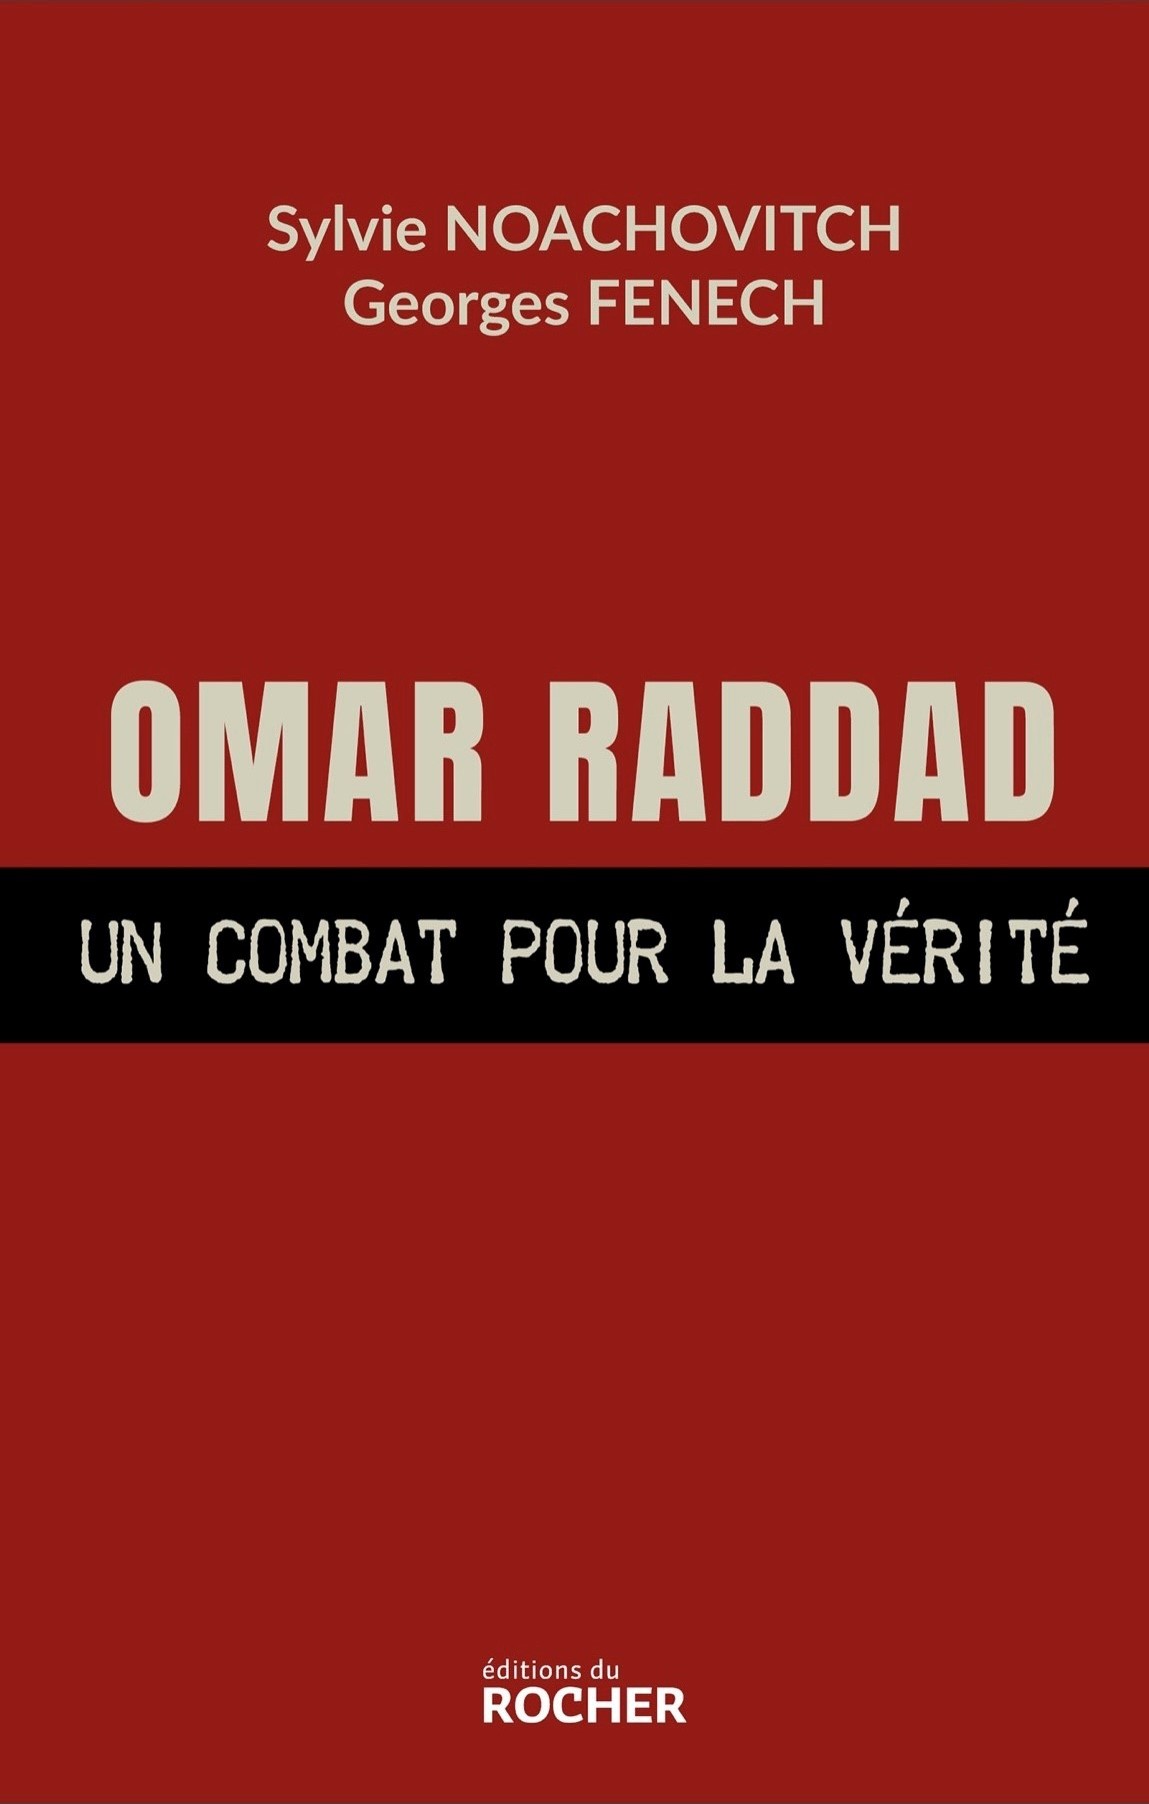 Livre Omar Raddad Un Combat pour la Vérité